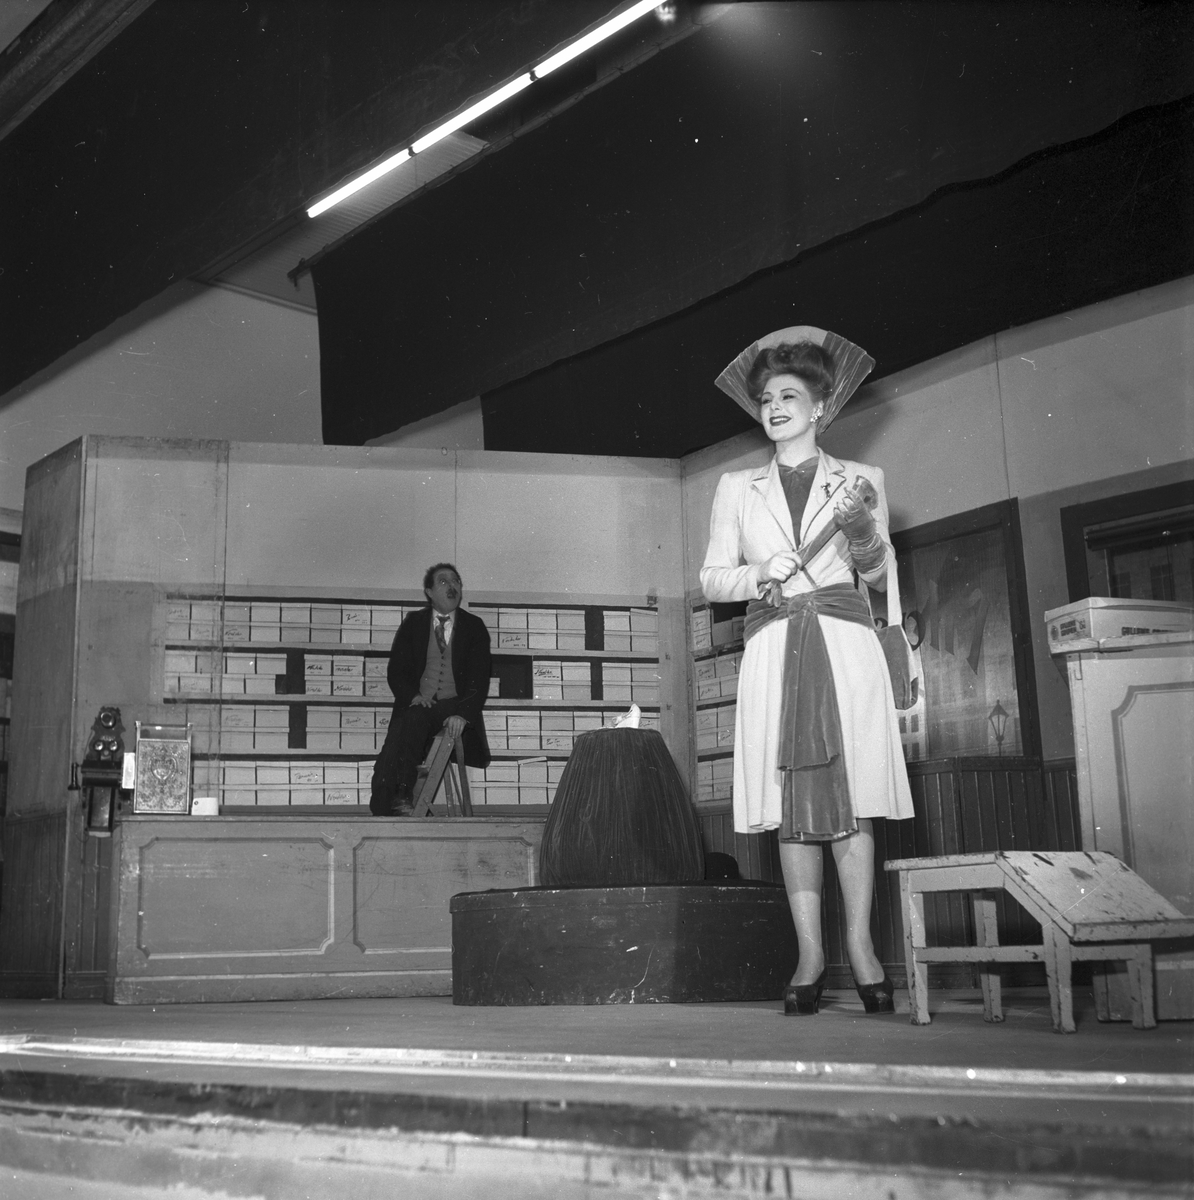 Operett " Min syster och jag" första föreställningen på Folkets Hus. 26 april 1947. Skådespelerskan Maj-Lis Lüning. Reportage för Arbetarbladet.